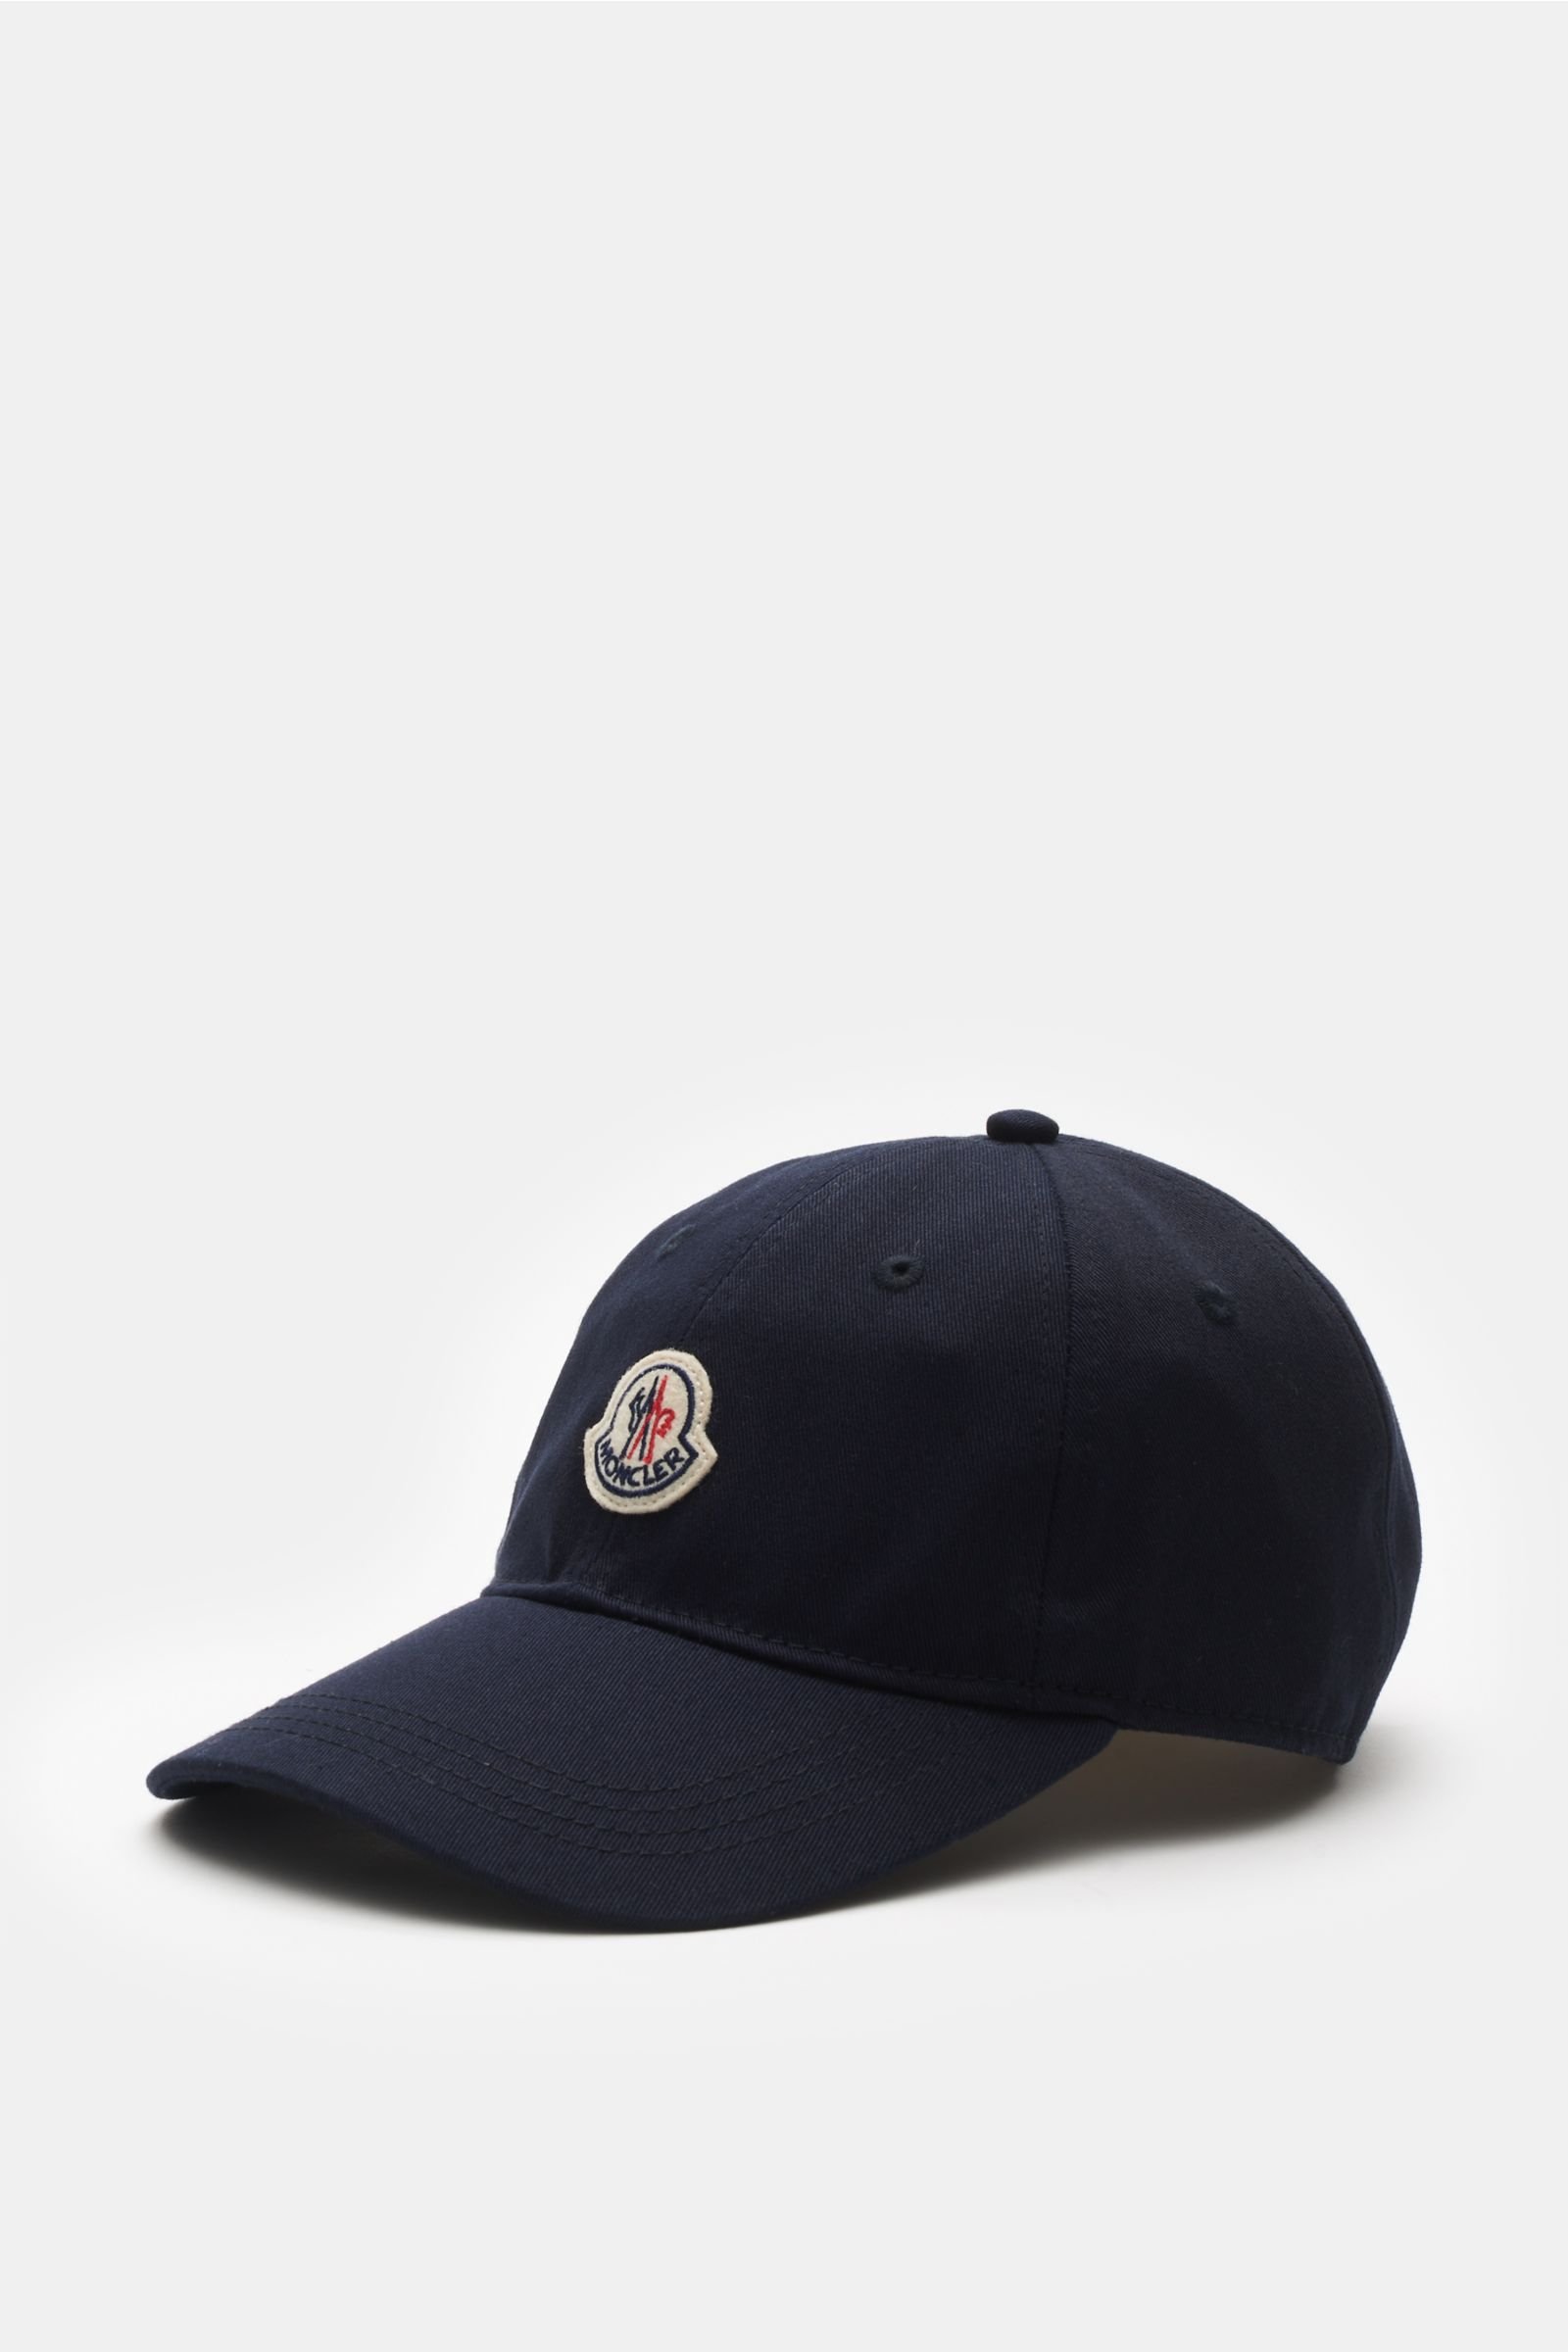 Baseball-Cap dark navy